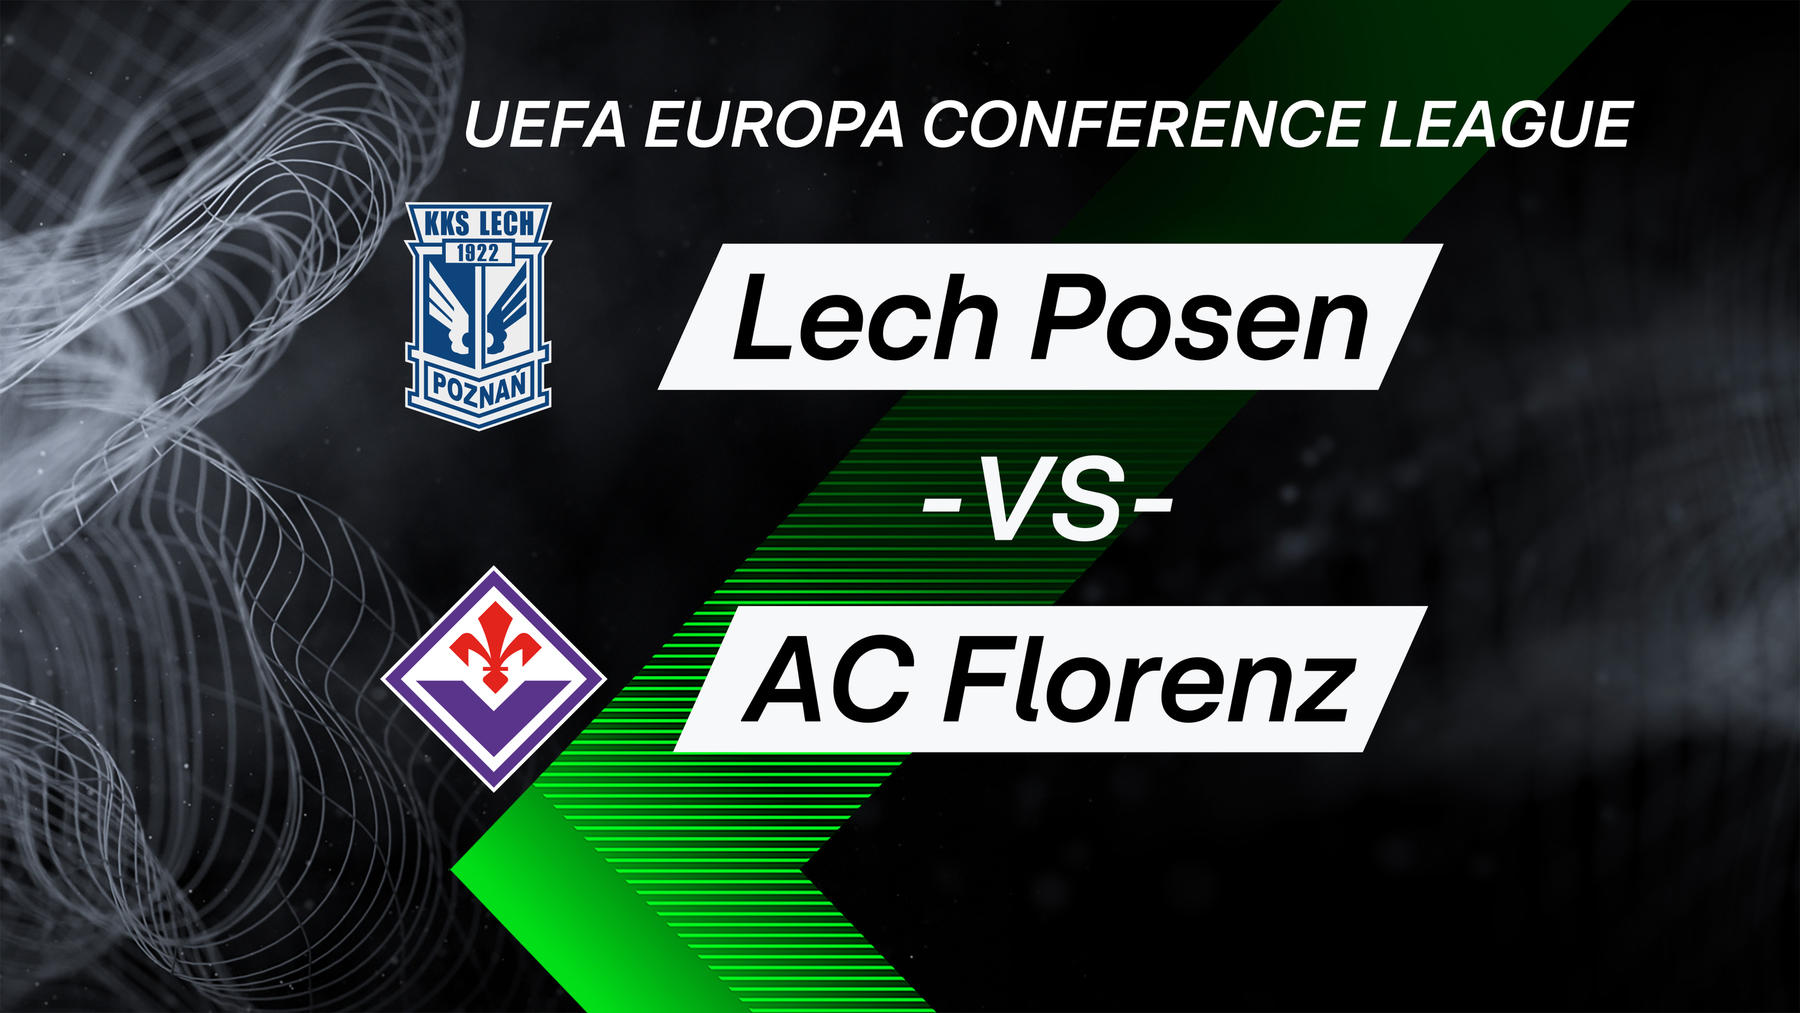 Lech Posen vs. AC Florenz